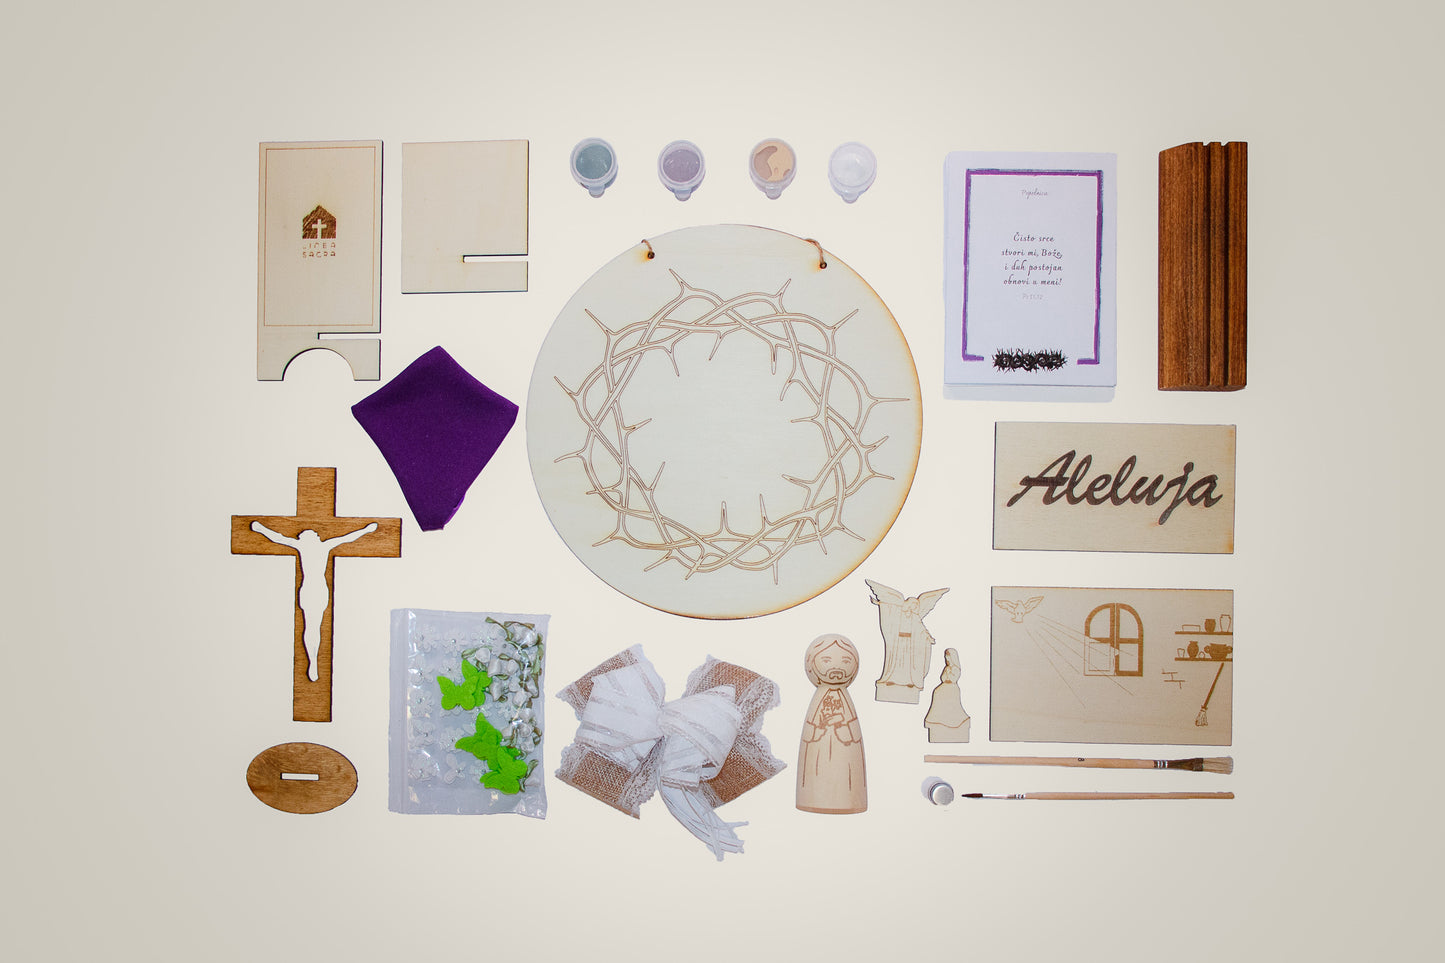 Korizmena kutija, liturgijske aktivnosti za obitelji